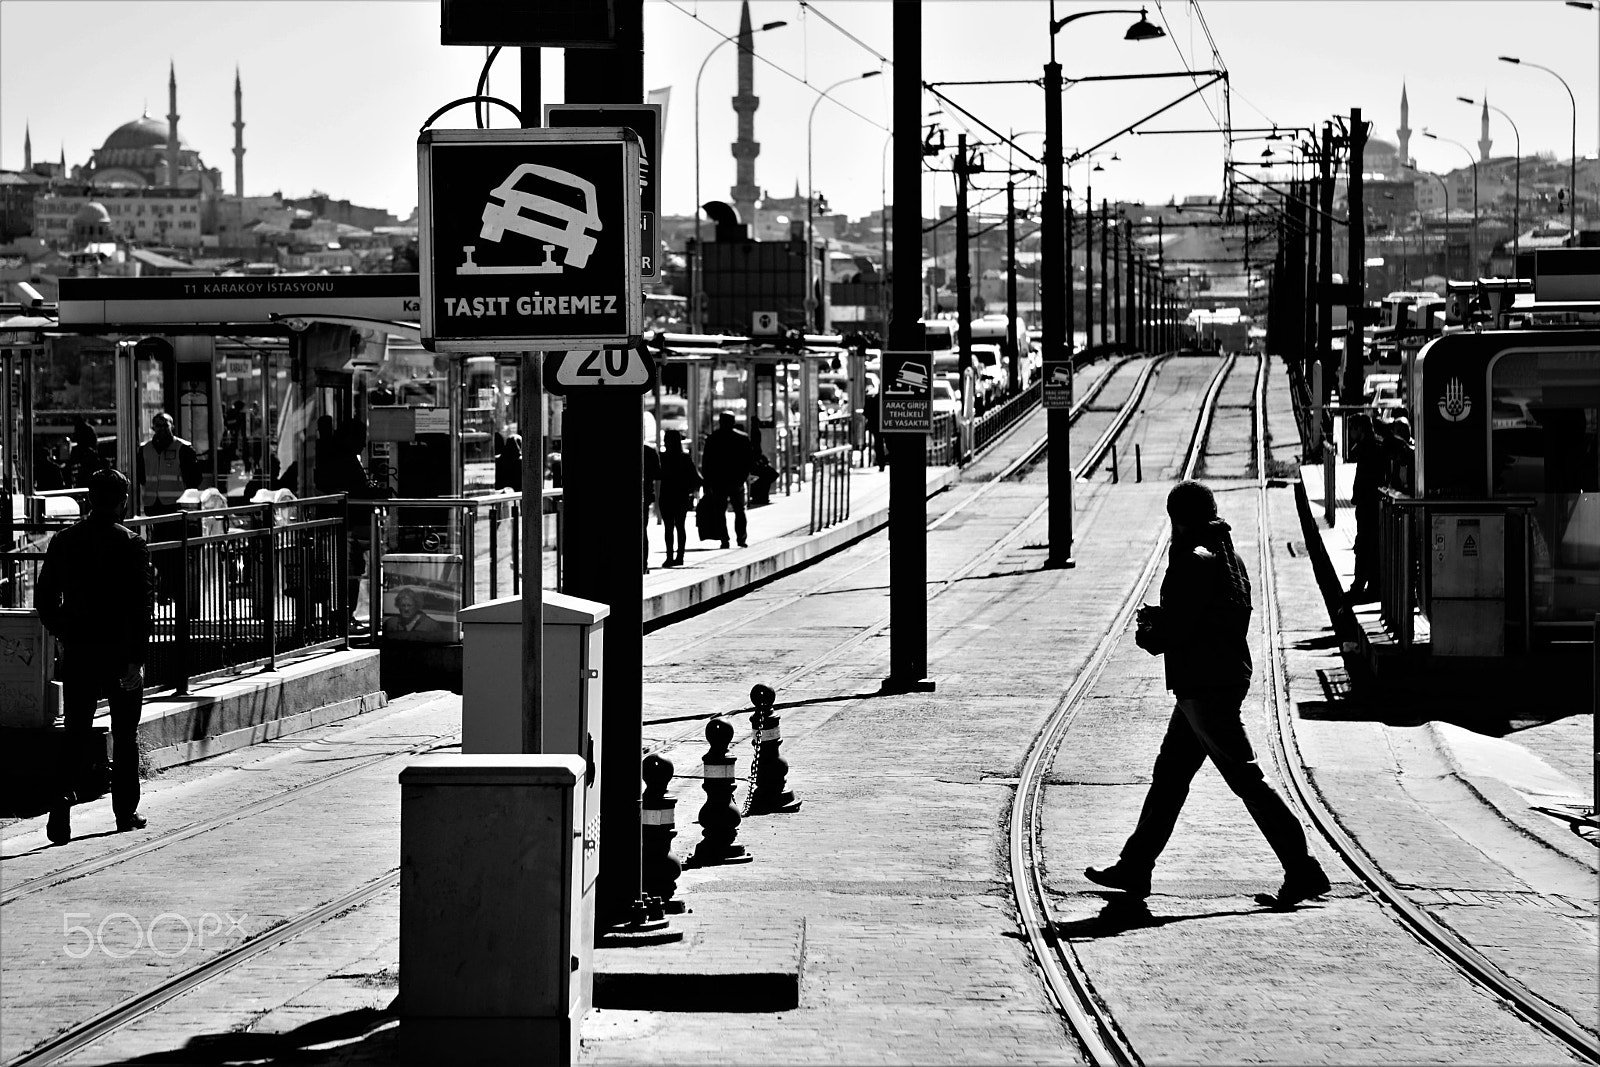 Sony a6300 sample photo. Karaköy tram station photography